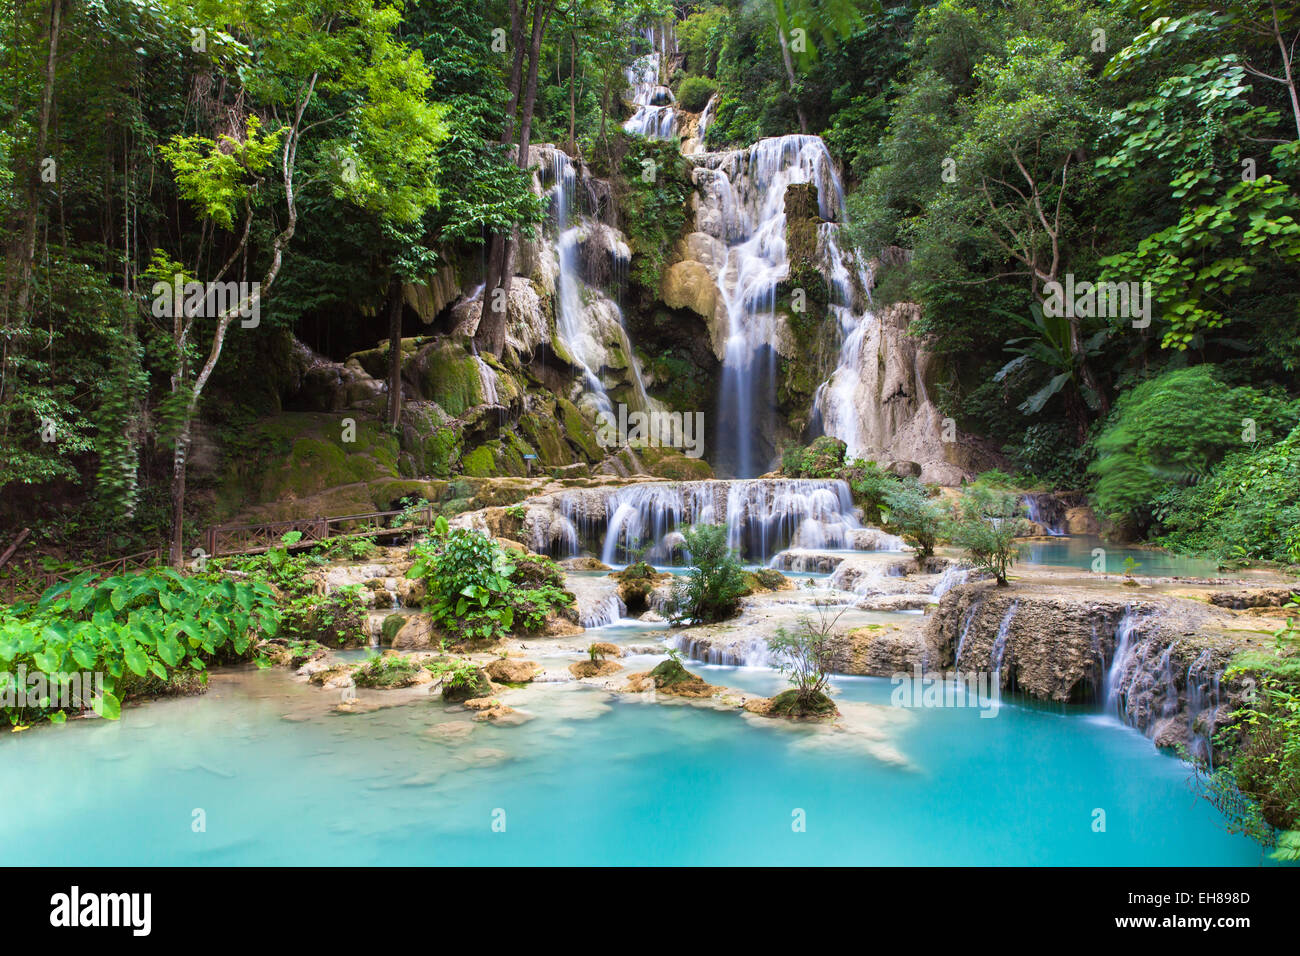 Cascades de Kuang Si, belle cascade de cascades bleu près de la ville de Luang Prabang au Laos. Banque D'Images